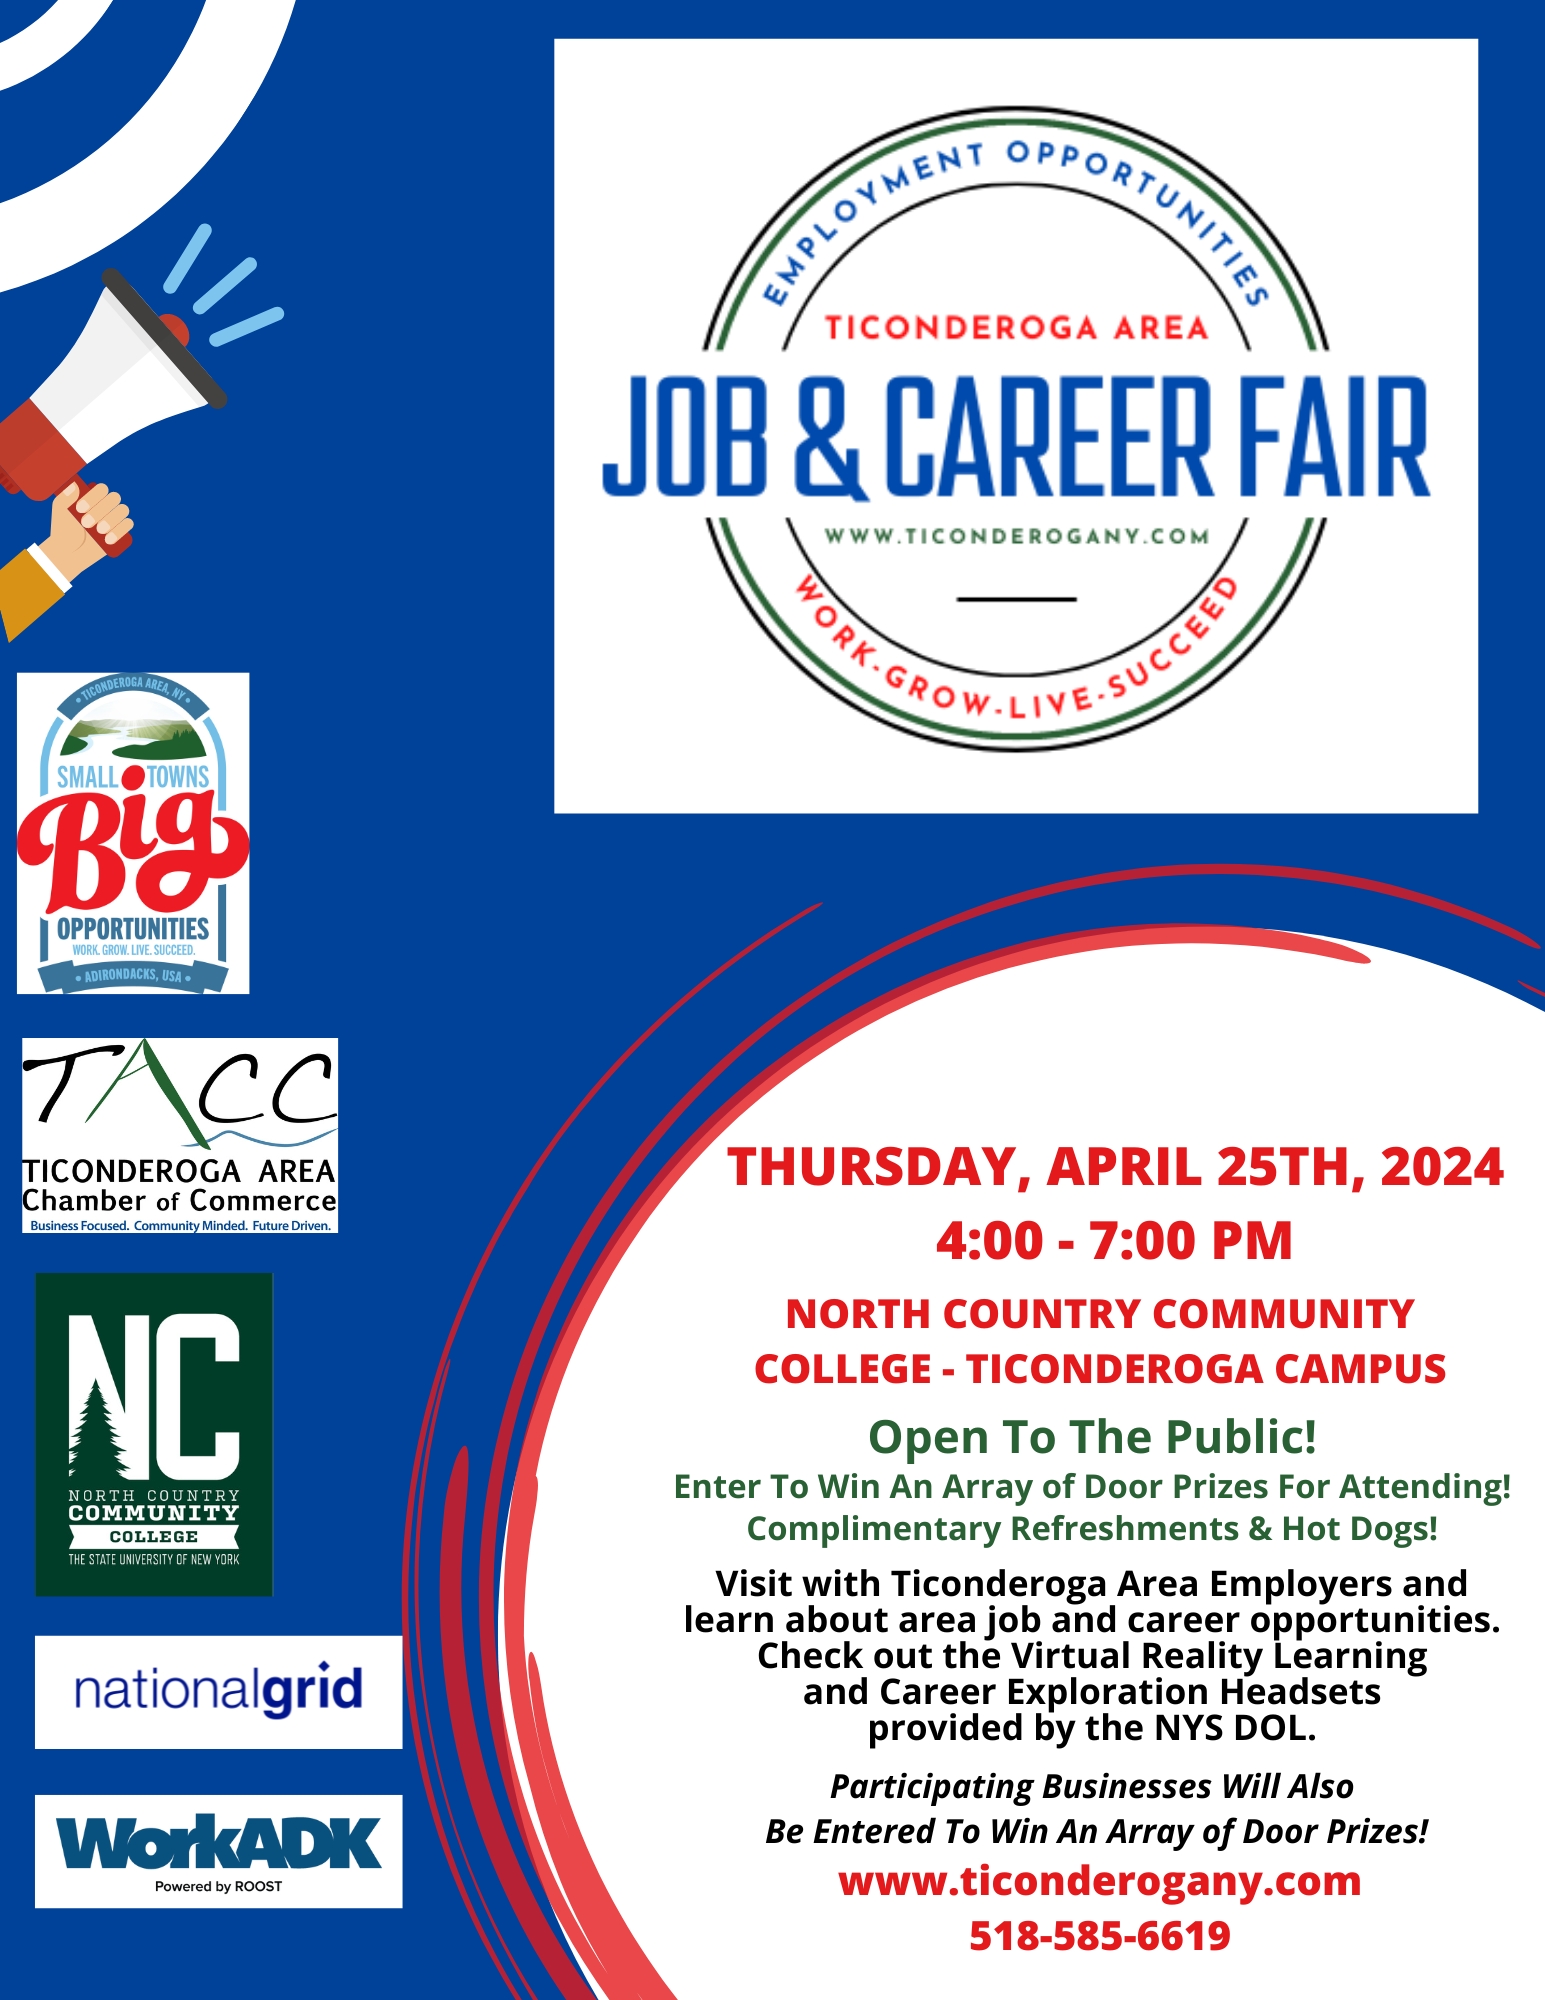 Ticonderoga Area Job and Career Fair